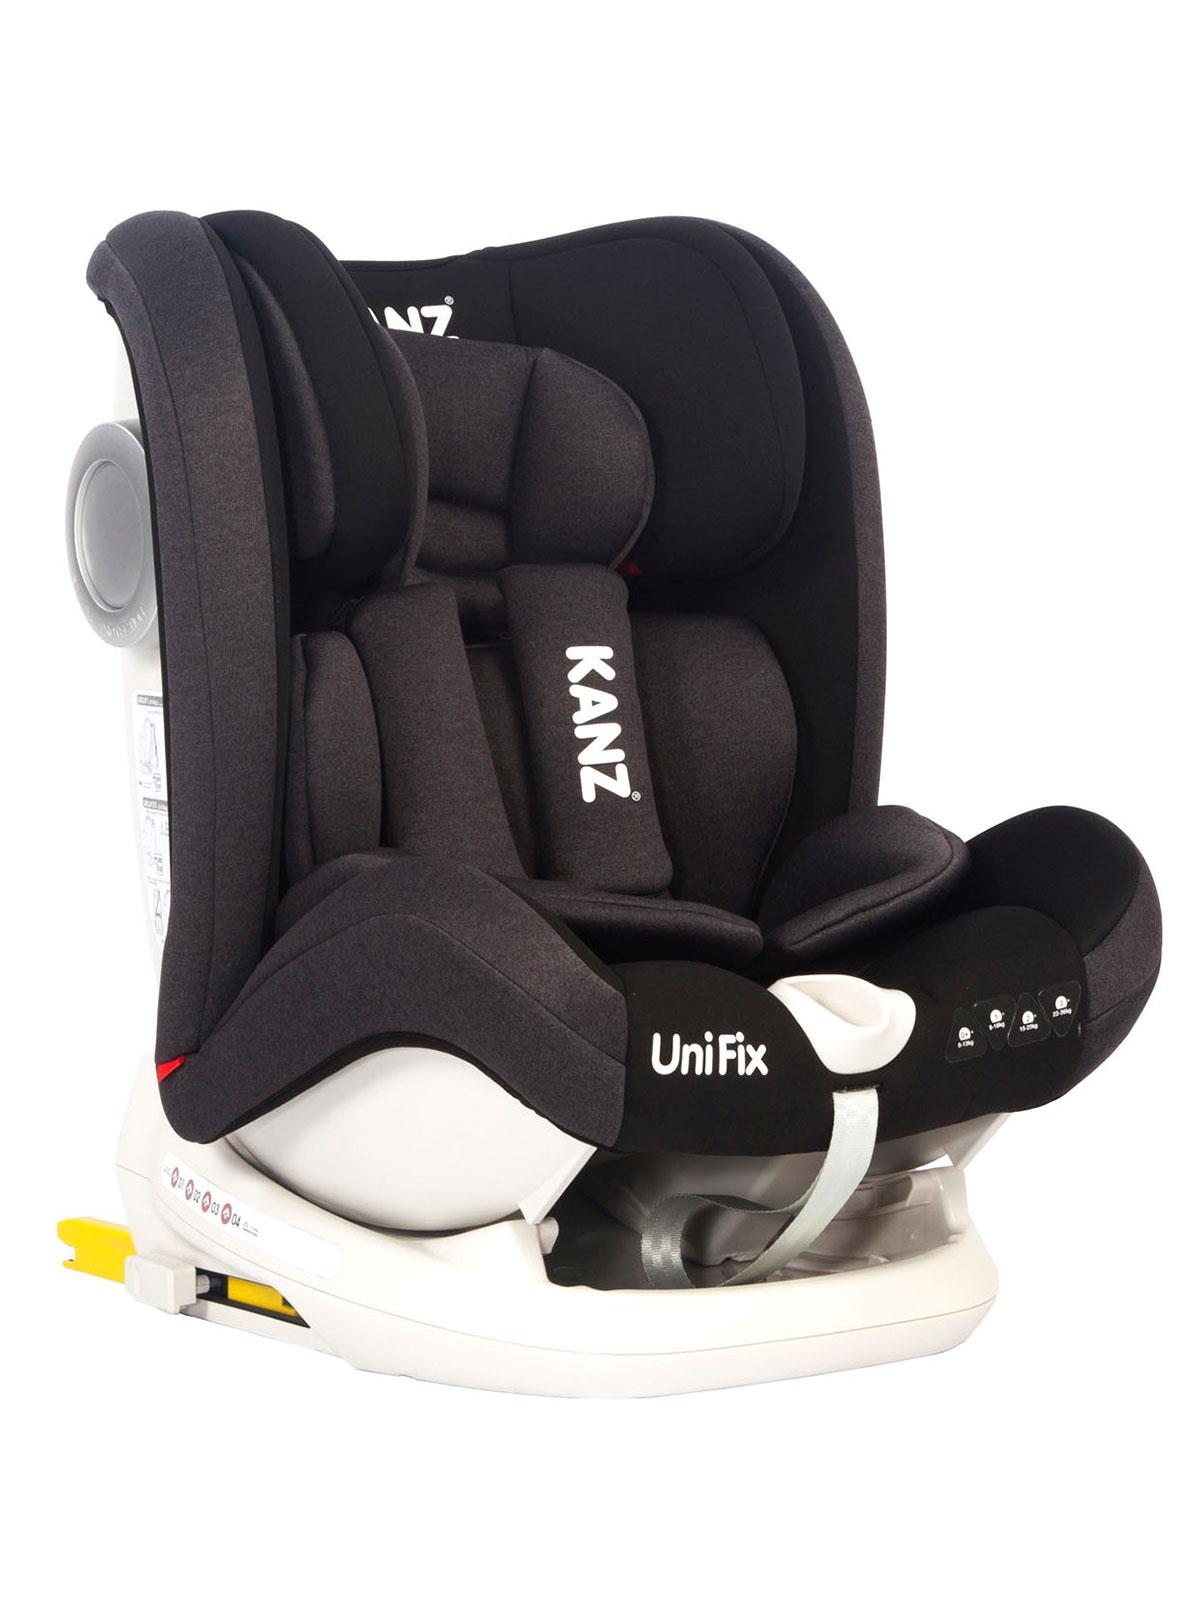 Kanz UniFix Car Seat Black